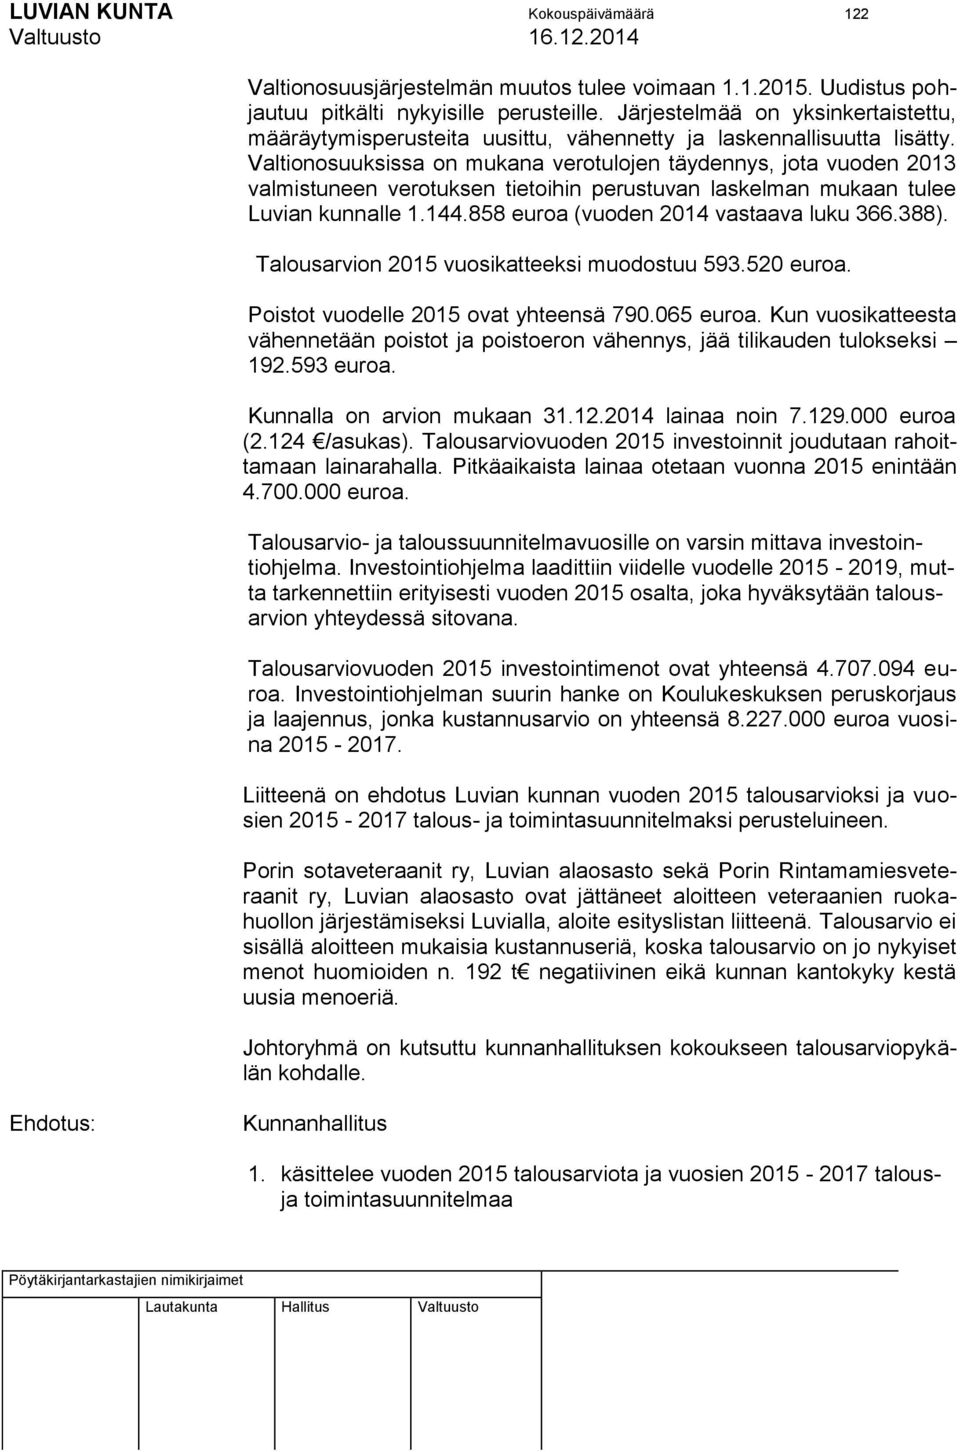 Valtionosuuksissa on mukana verotulojen täydennys, jota vuoden 2013 valmistuneen verotuksen tietoihin perustuvan laskelman mukaan tulee Luvian kunnalle 1.144.858 euroa (vuoden 2014 vastaava luku 366.